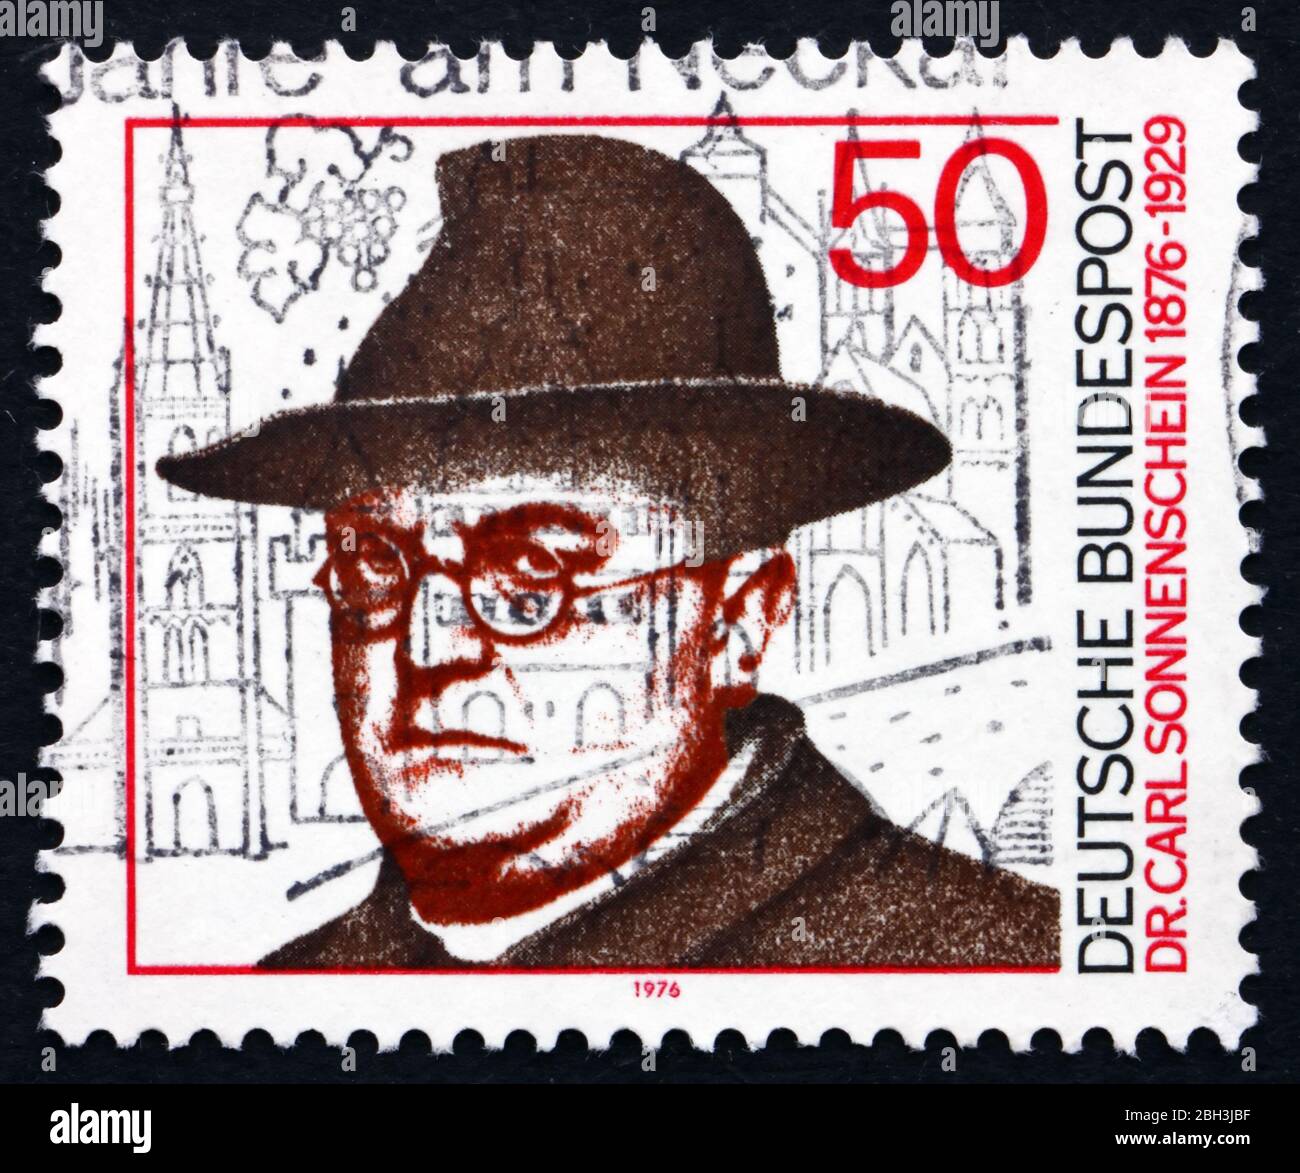 ALEMANIA - ALREDEDOR de 1976: Un sello impreso en Alemania muestra al Dr. Carl Sonnenschein, clérigo católico romano y reformador social, alrededor de 1976 Foto de stock